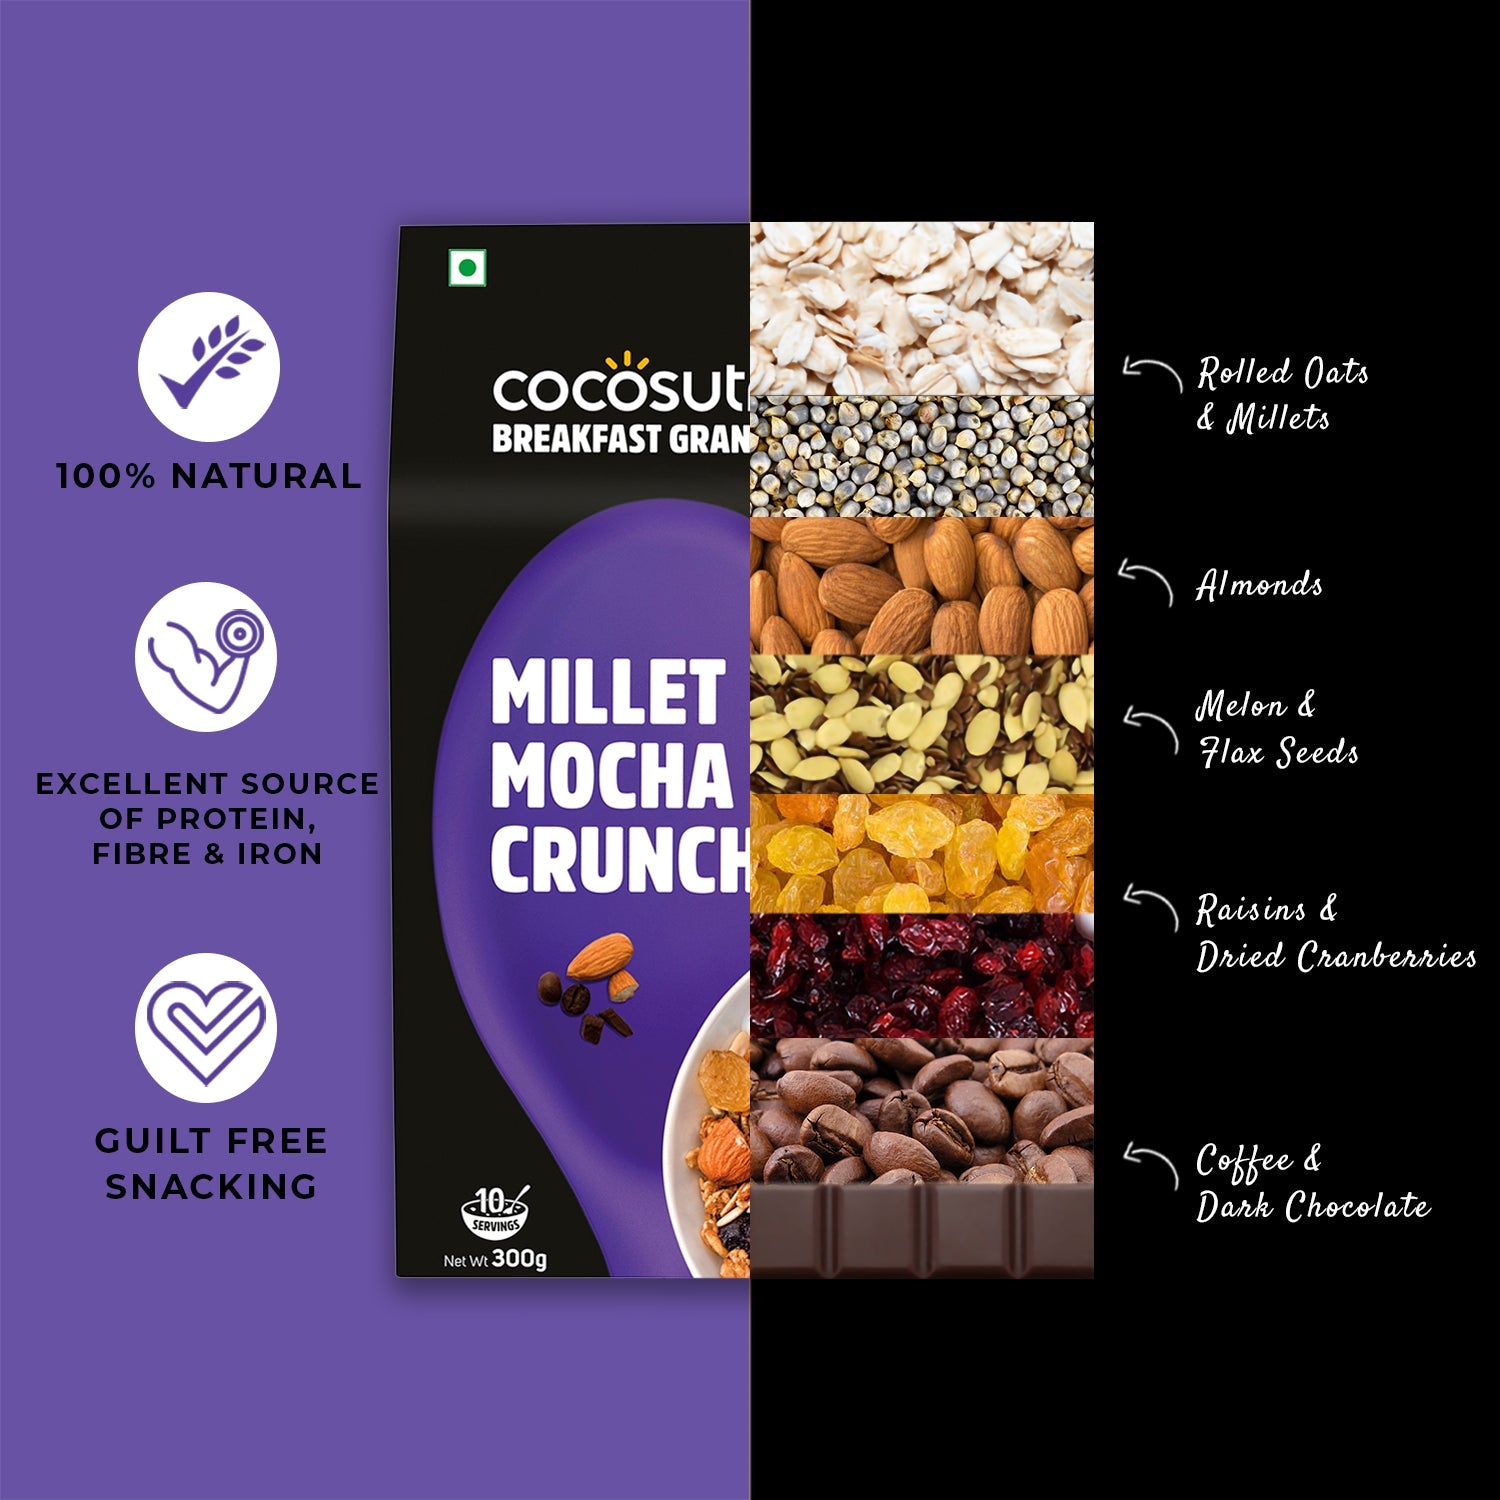 Millet Mocha Crunch Breakfast Granola | Box of 2 | 300 g each